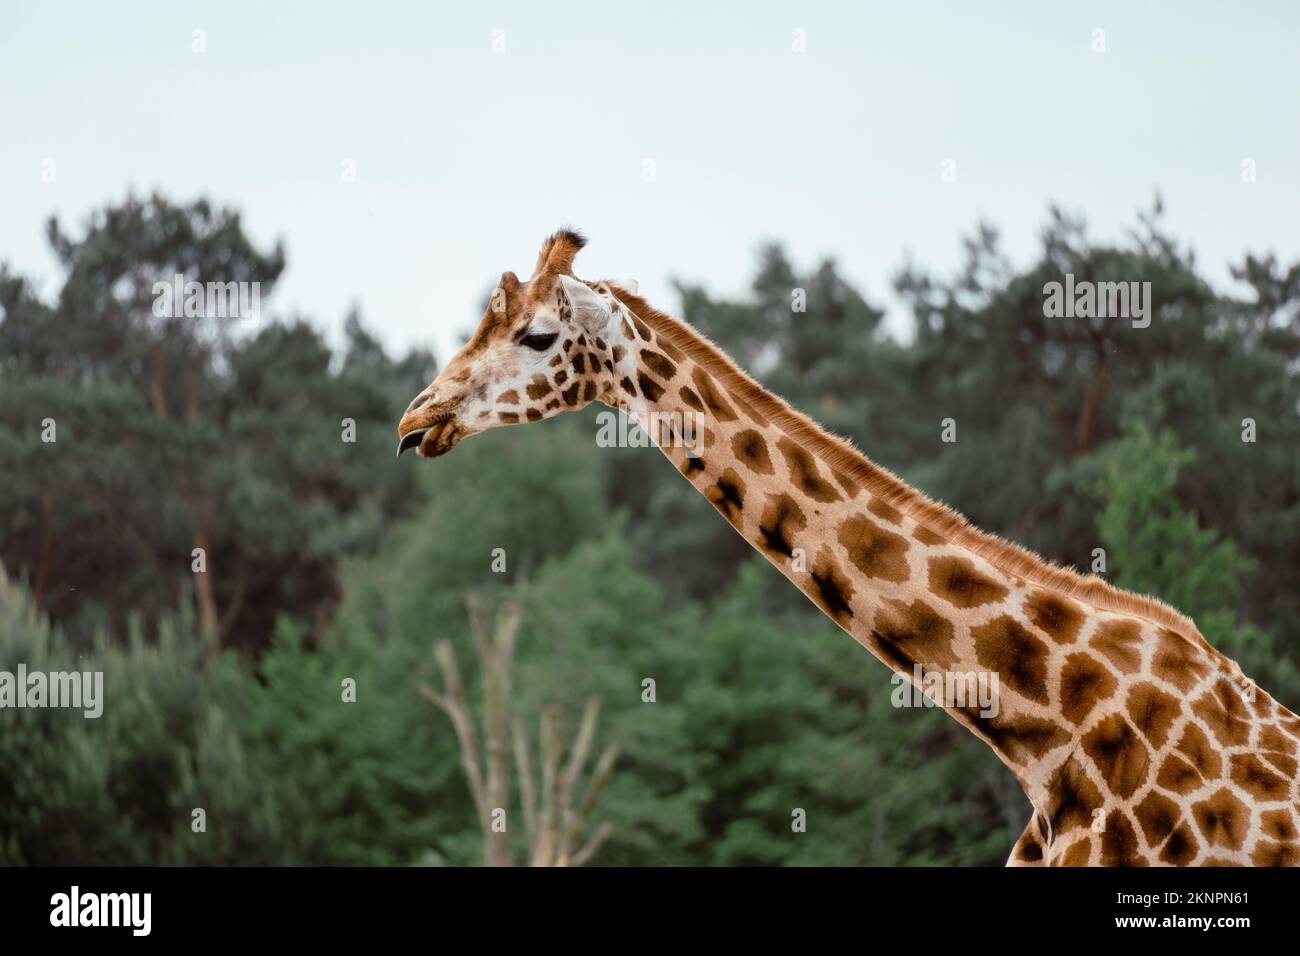 Primo piano di una giraffa nubiana, Giraffa camelopardalis che si aggancia la lingua nei boschi Foto Stock